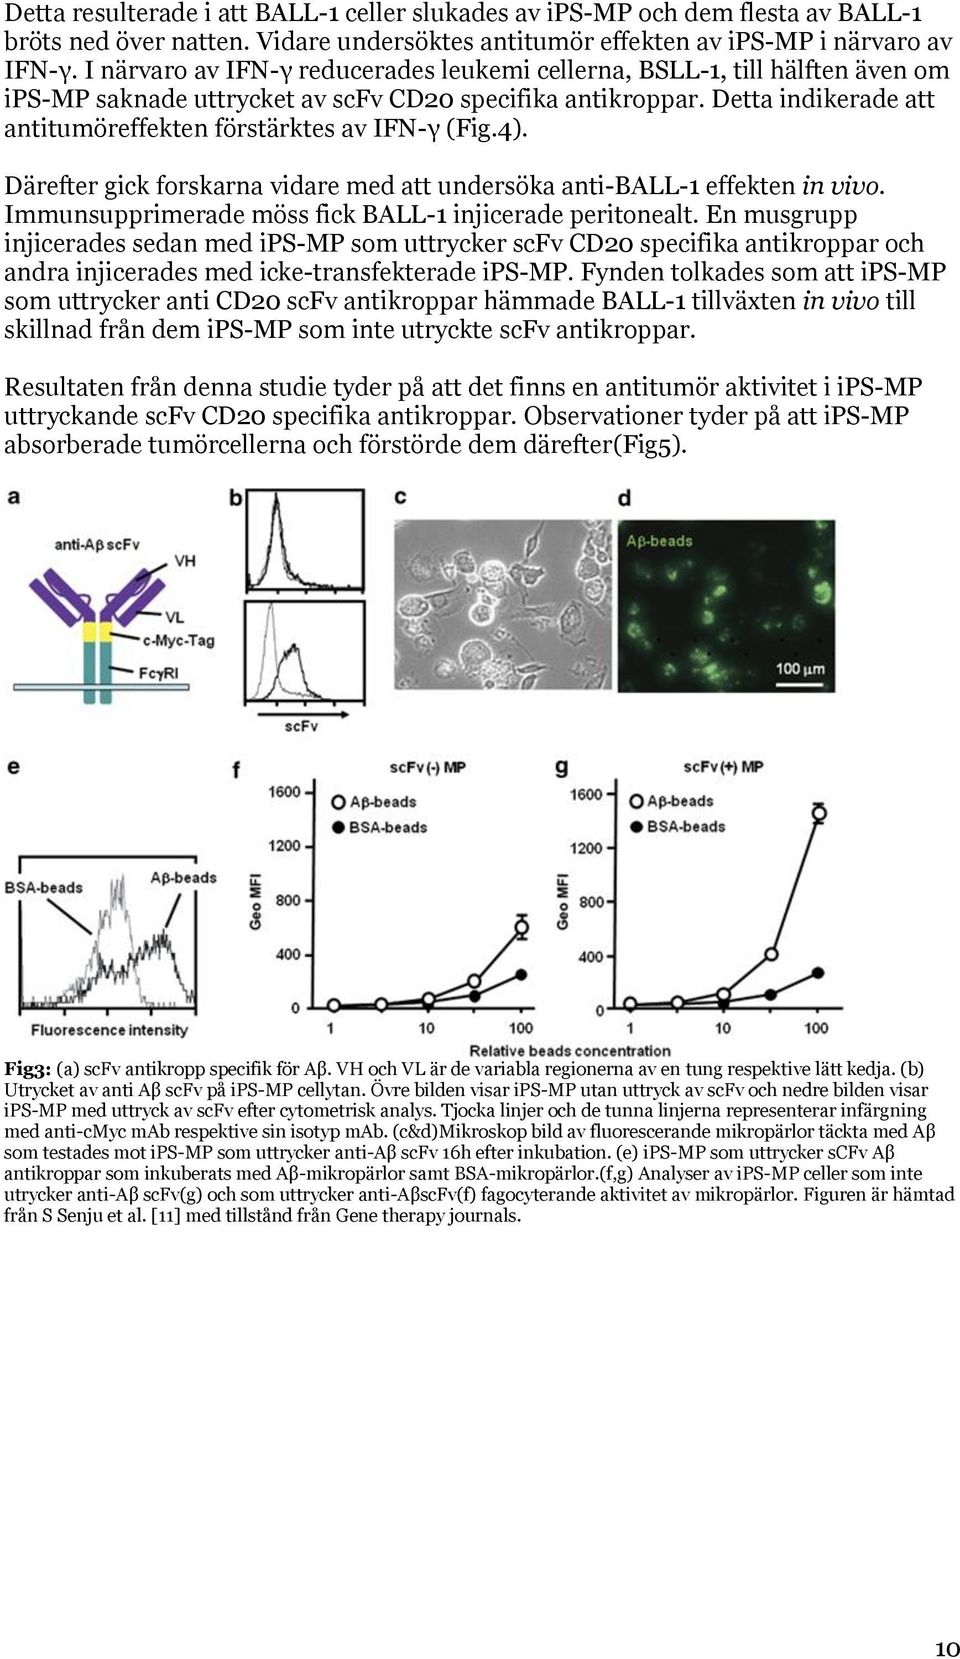 Detta indikerade att antitumöreffekten förstärktes av IFN-γ (Fig.4). Därefter gick forskarna vidare med att undersöka anti-ball-1 effekten in vivo.